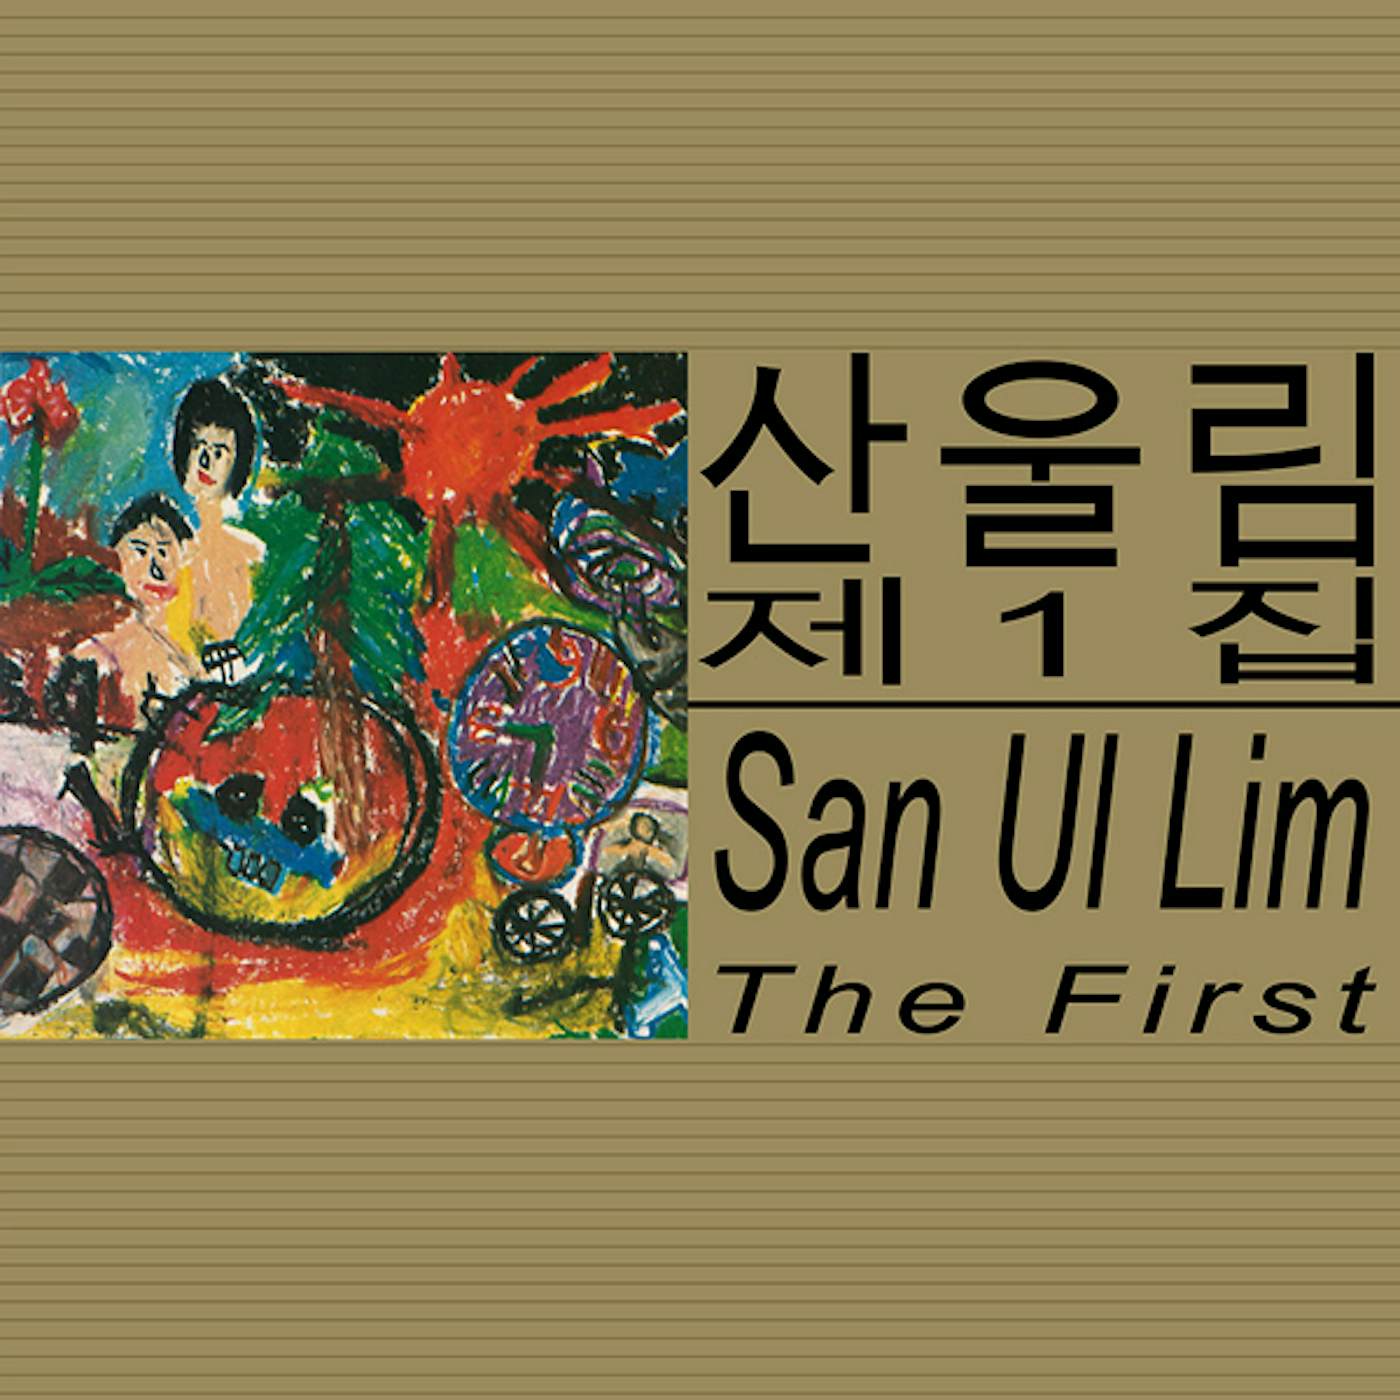 SAN UL LIM FIRST Vinyl Record